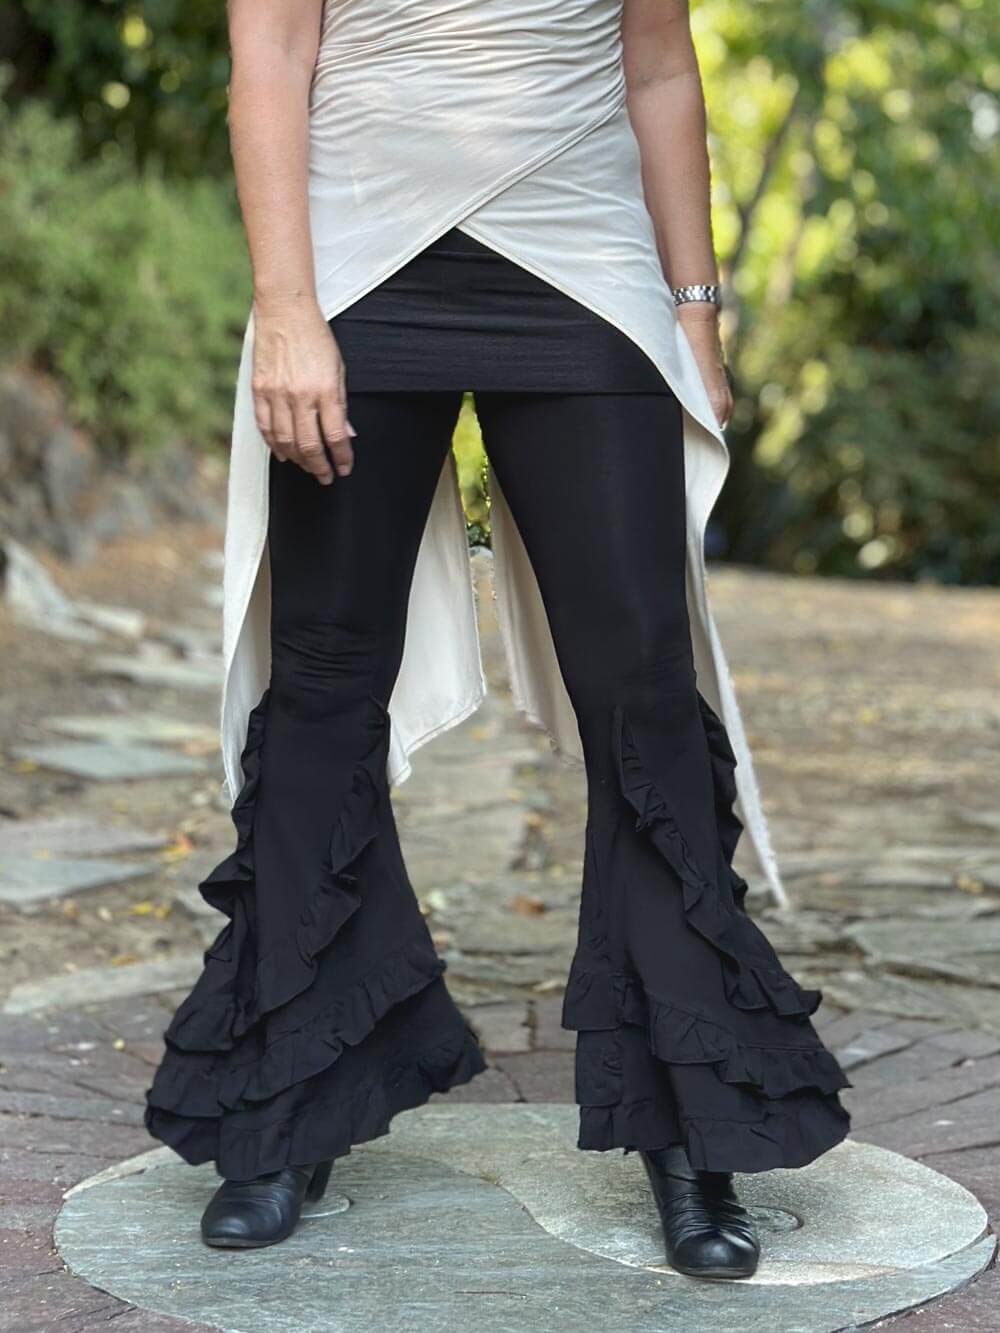 Black dance leggings with overskirt